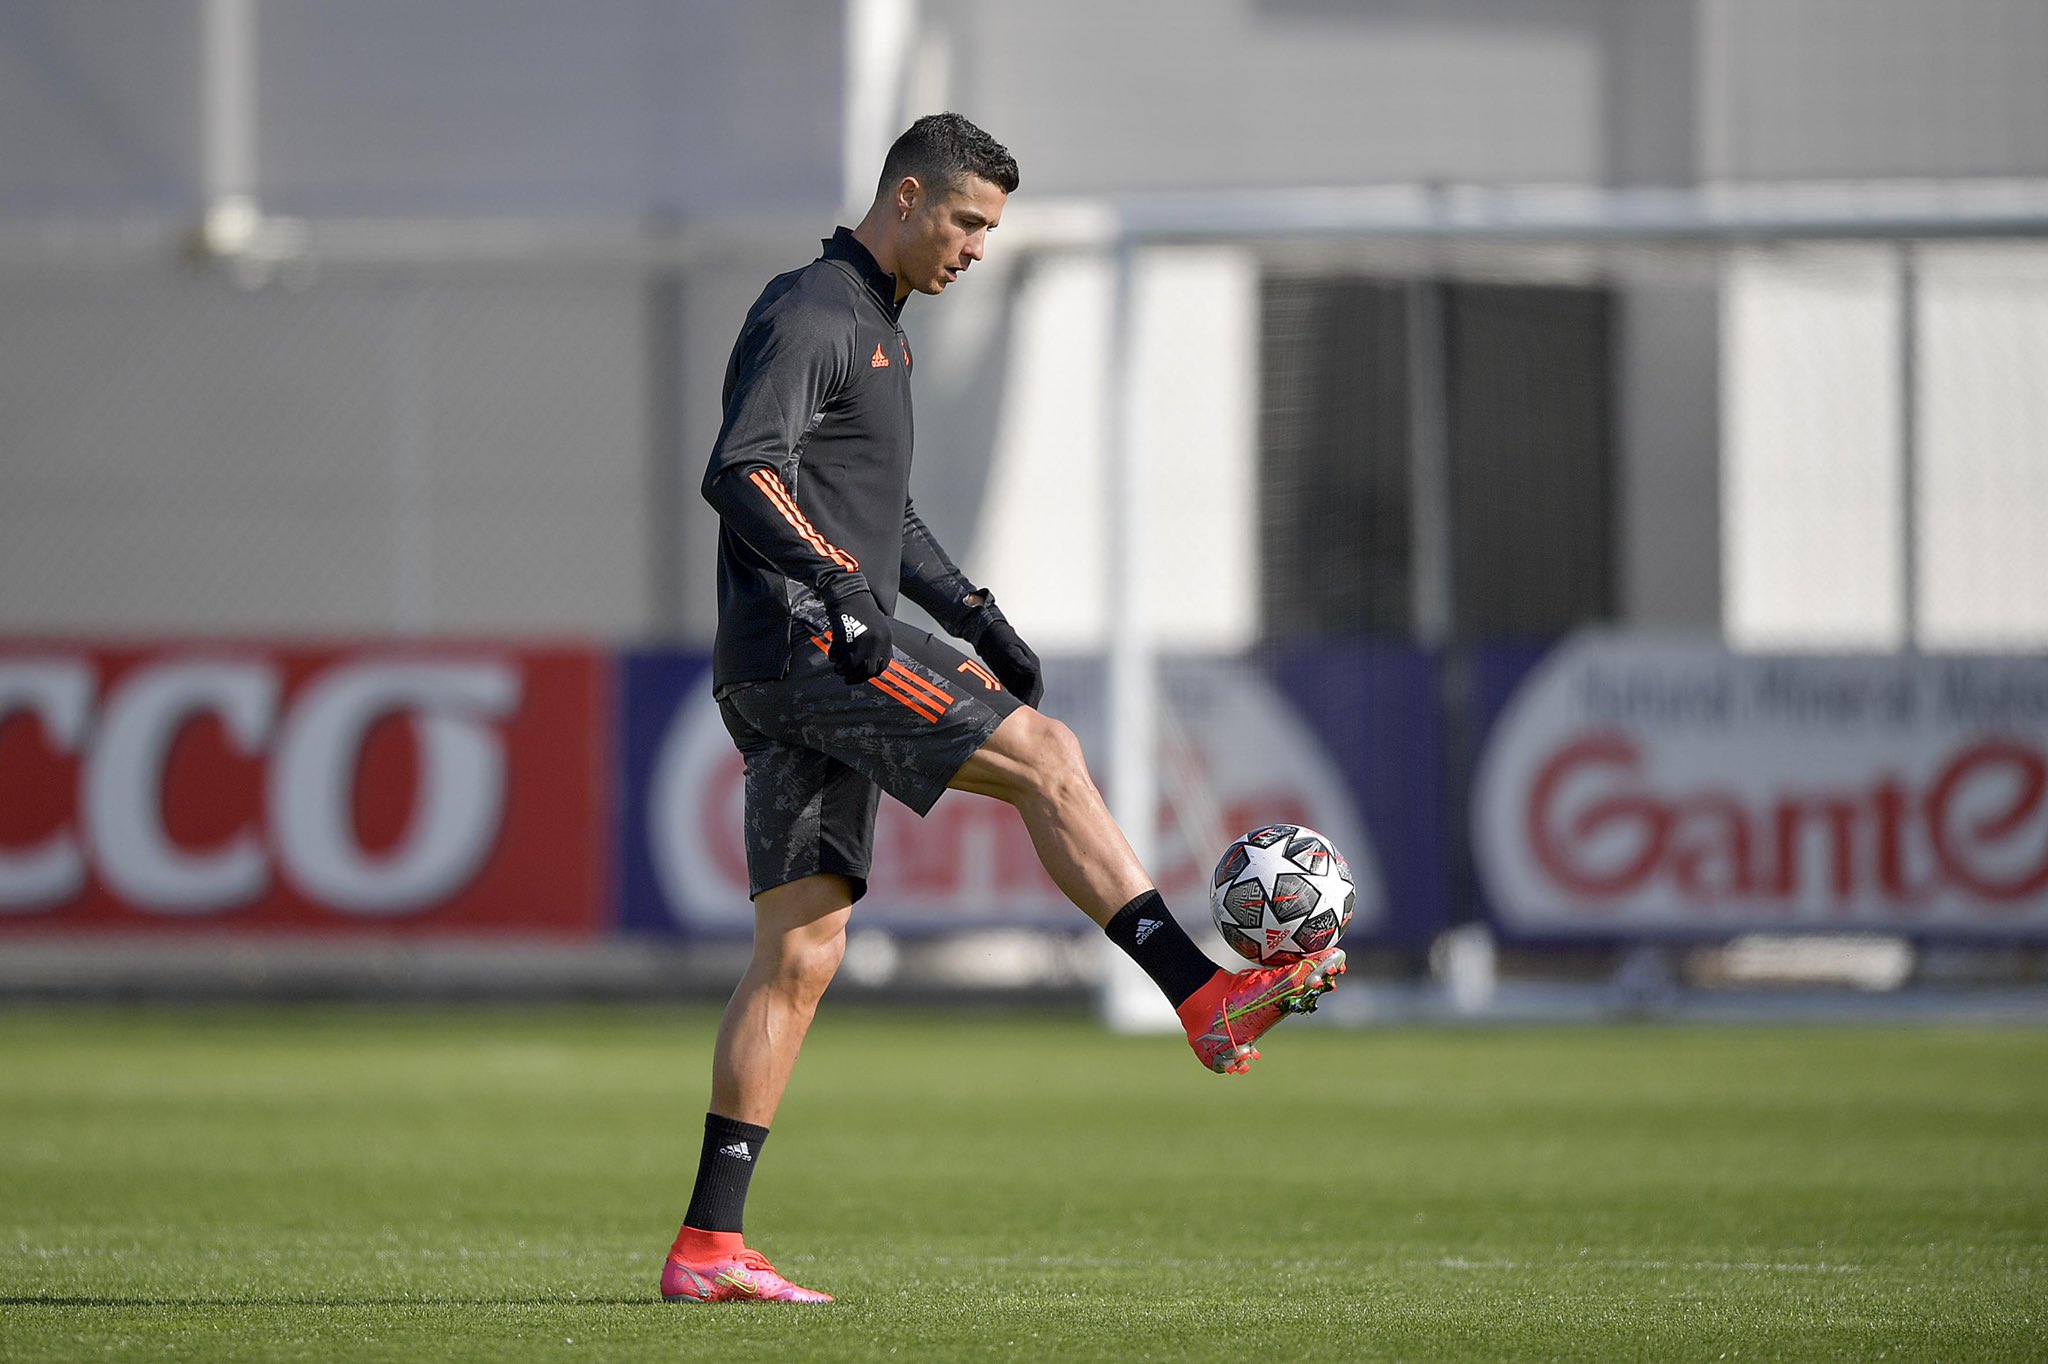 Cristiano Ronaldo durante la práctica previa al partido entre la Juventus y el Porto. (Foto Prensa Libre: Twitter Cristiano Ronaldo)